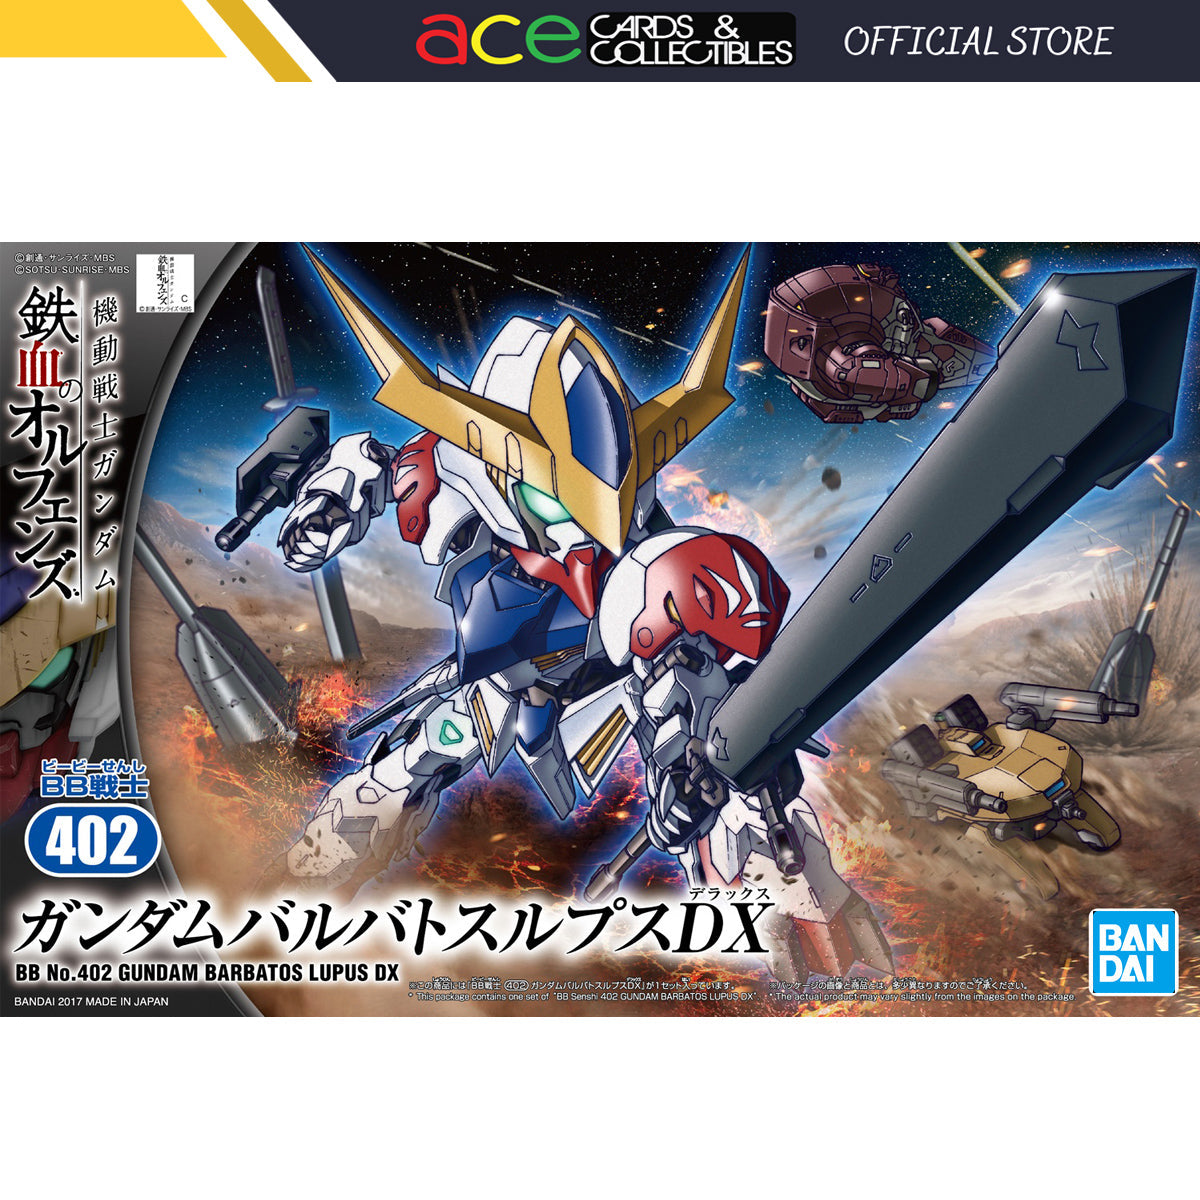 BB Gundam Barbatos Lupus DX-Bandai-Ace Cards & Collectibles